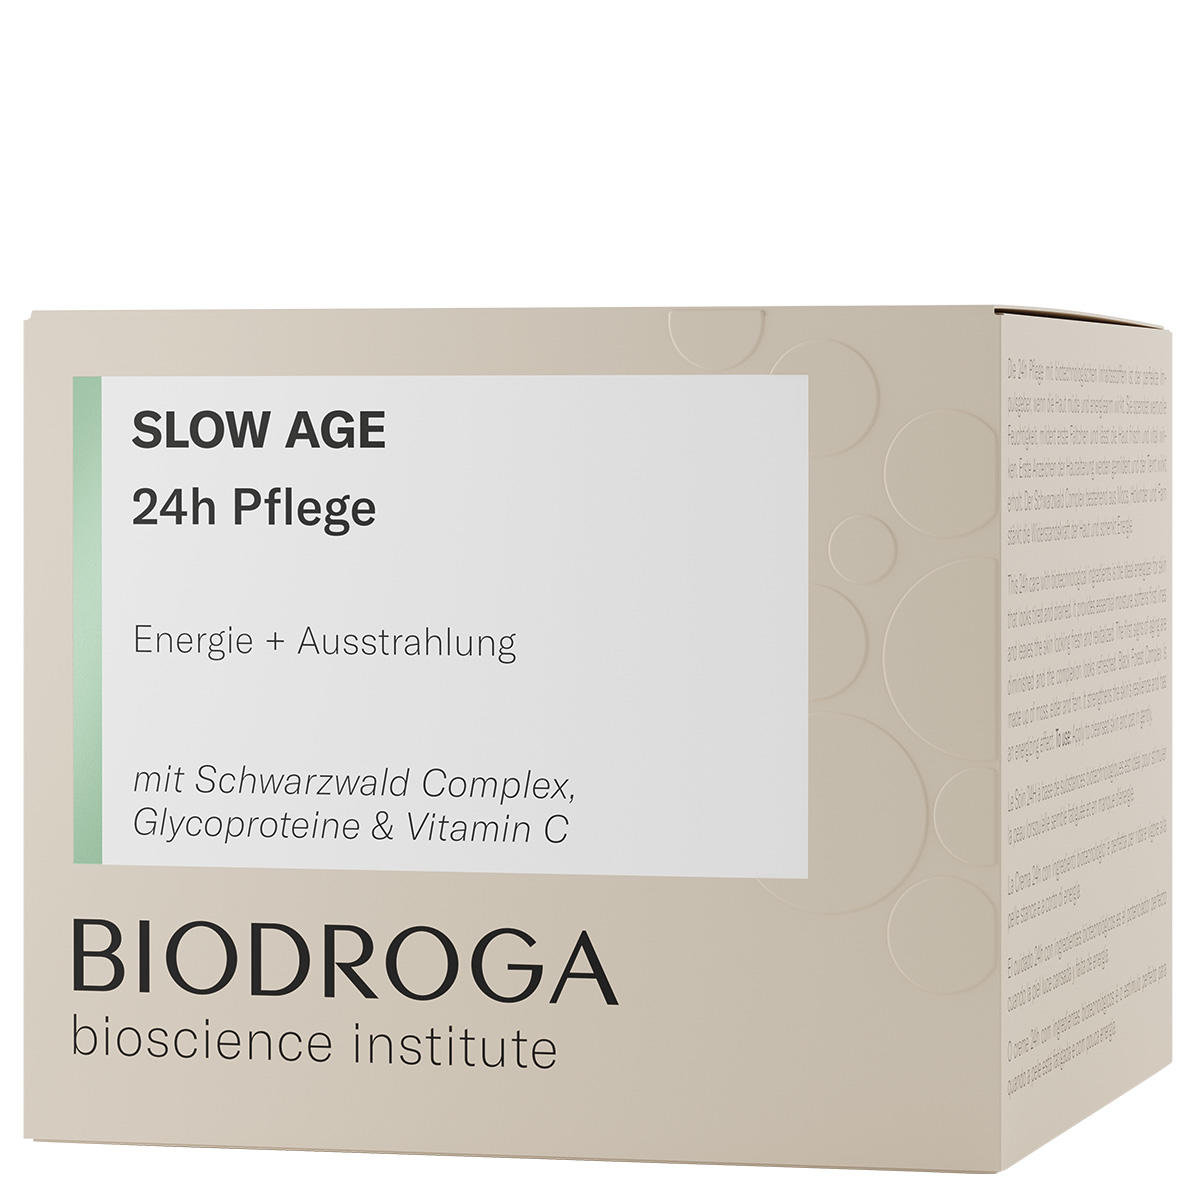 BIODROGA Bioscience Institute SLOW AGE Atención 24 horas 50 ml - 2